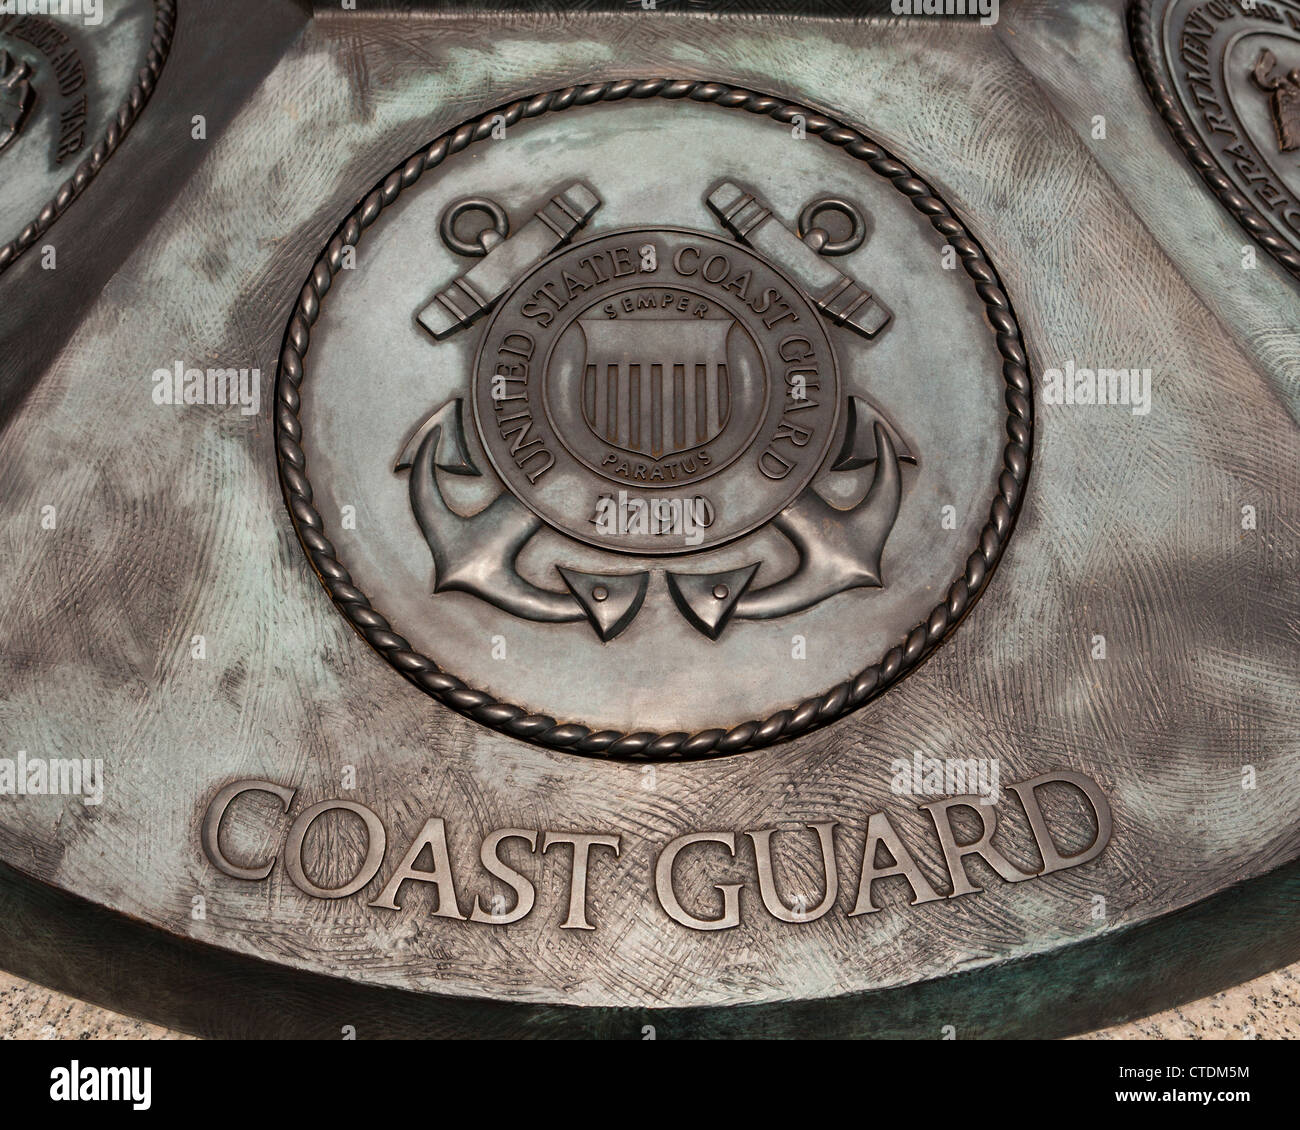 US Coast Guard seal Stock Photo